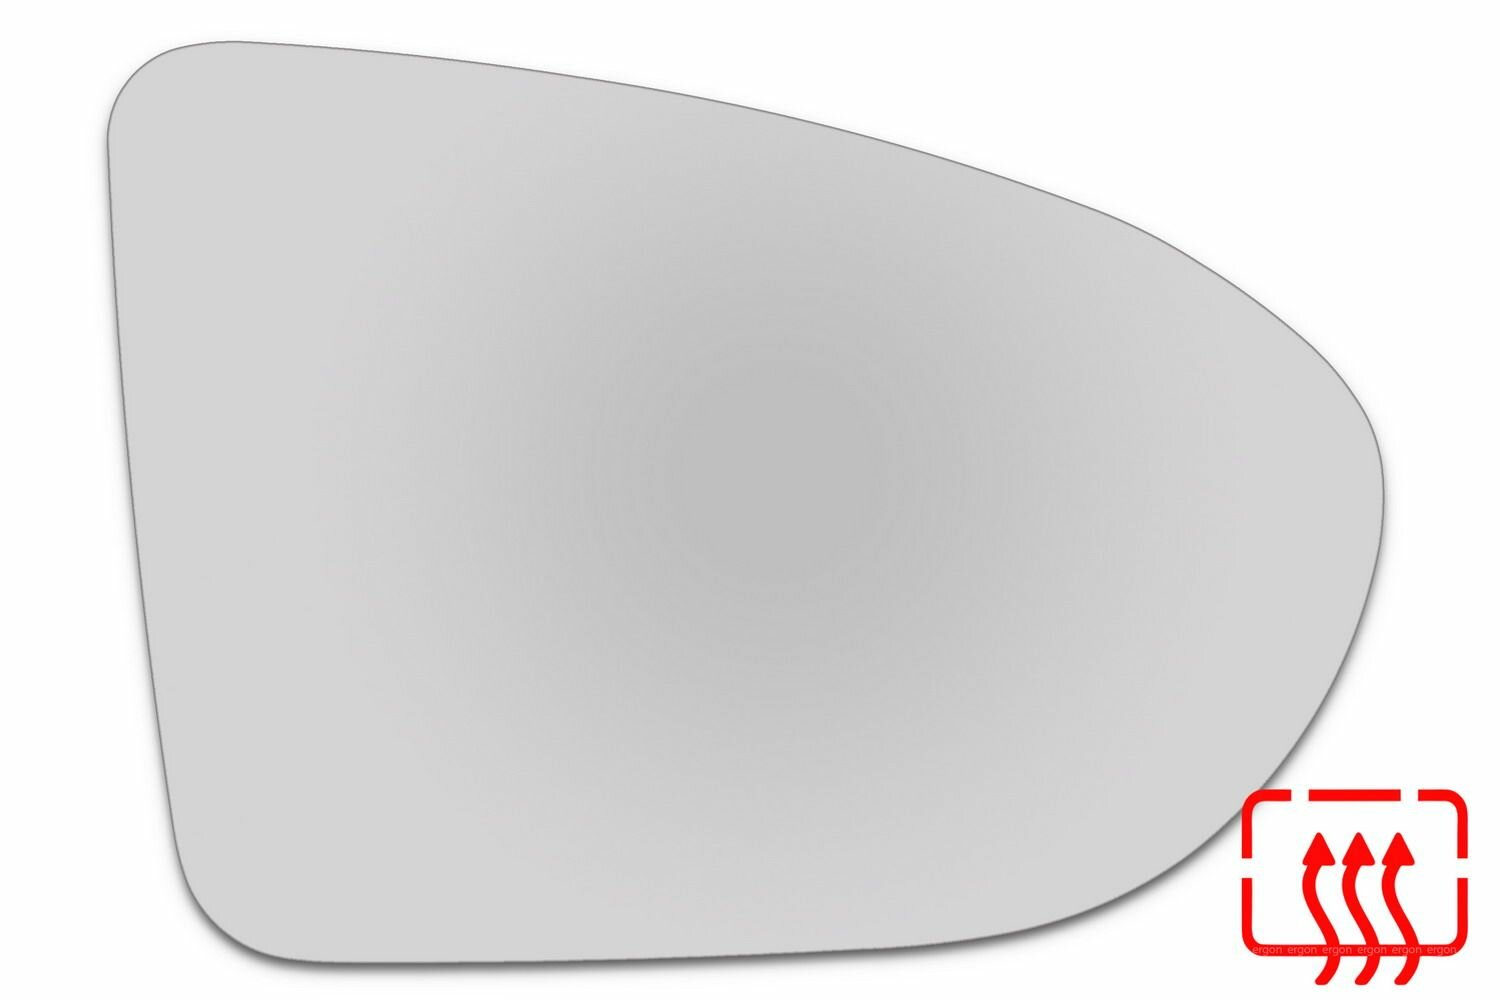 Элемент зеркала NISSAN Qashqai c 2007 по 2014 правый сферический c обогревом 69000709